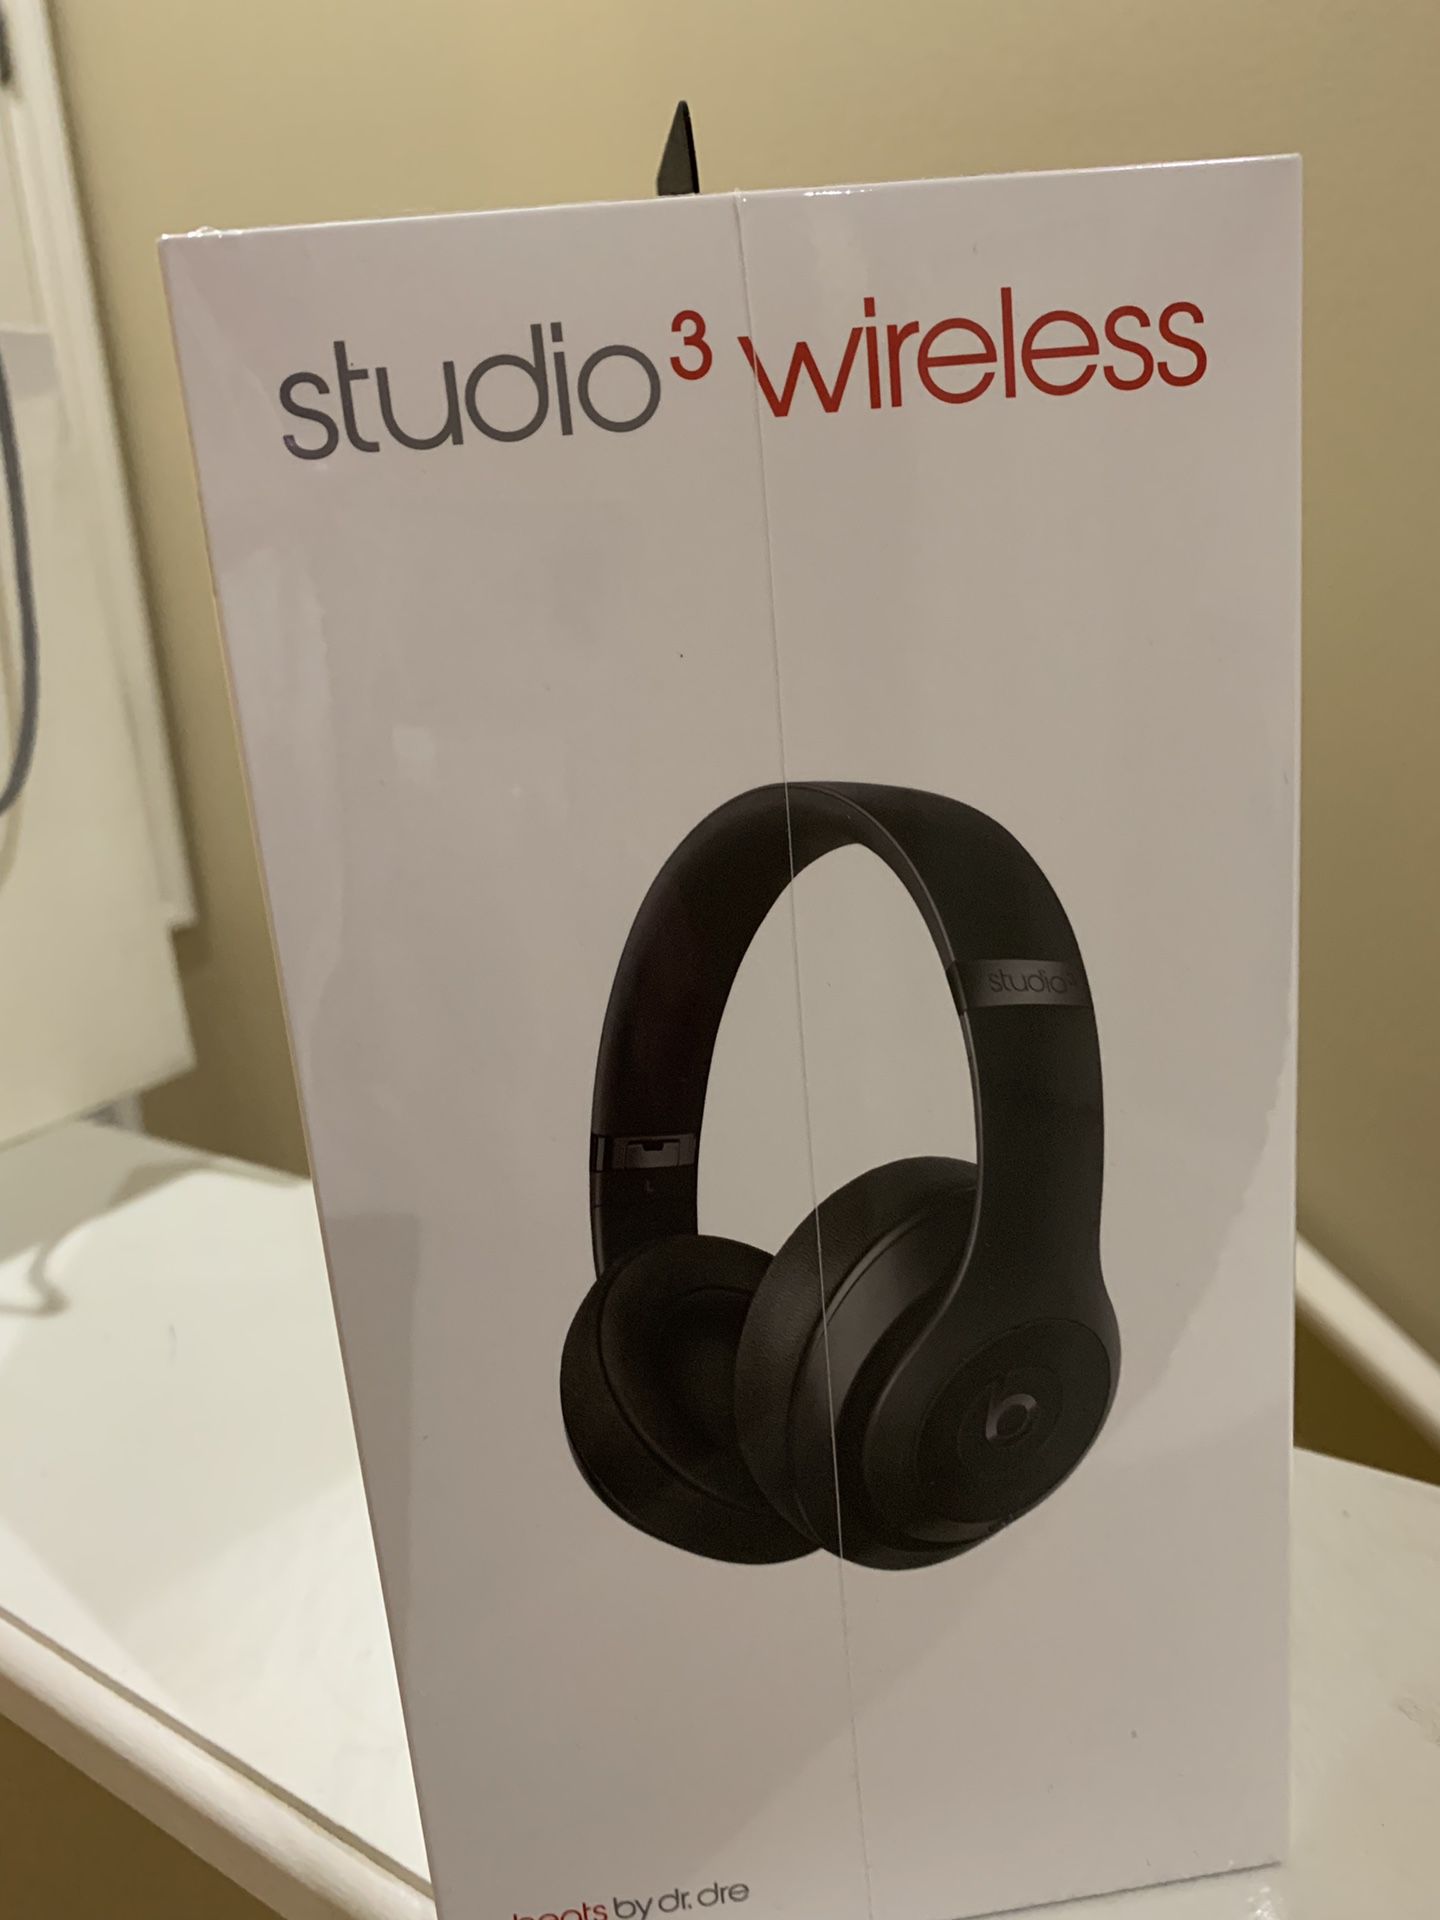 Studio3 wireless Beats by DRE